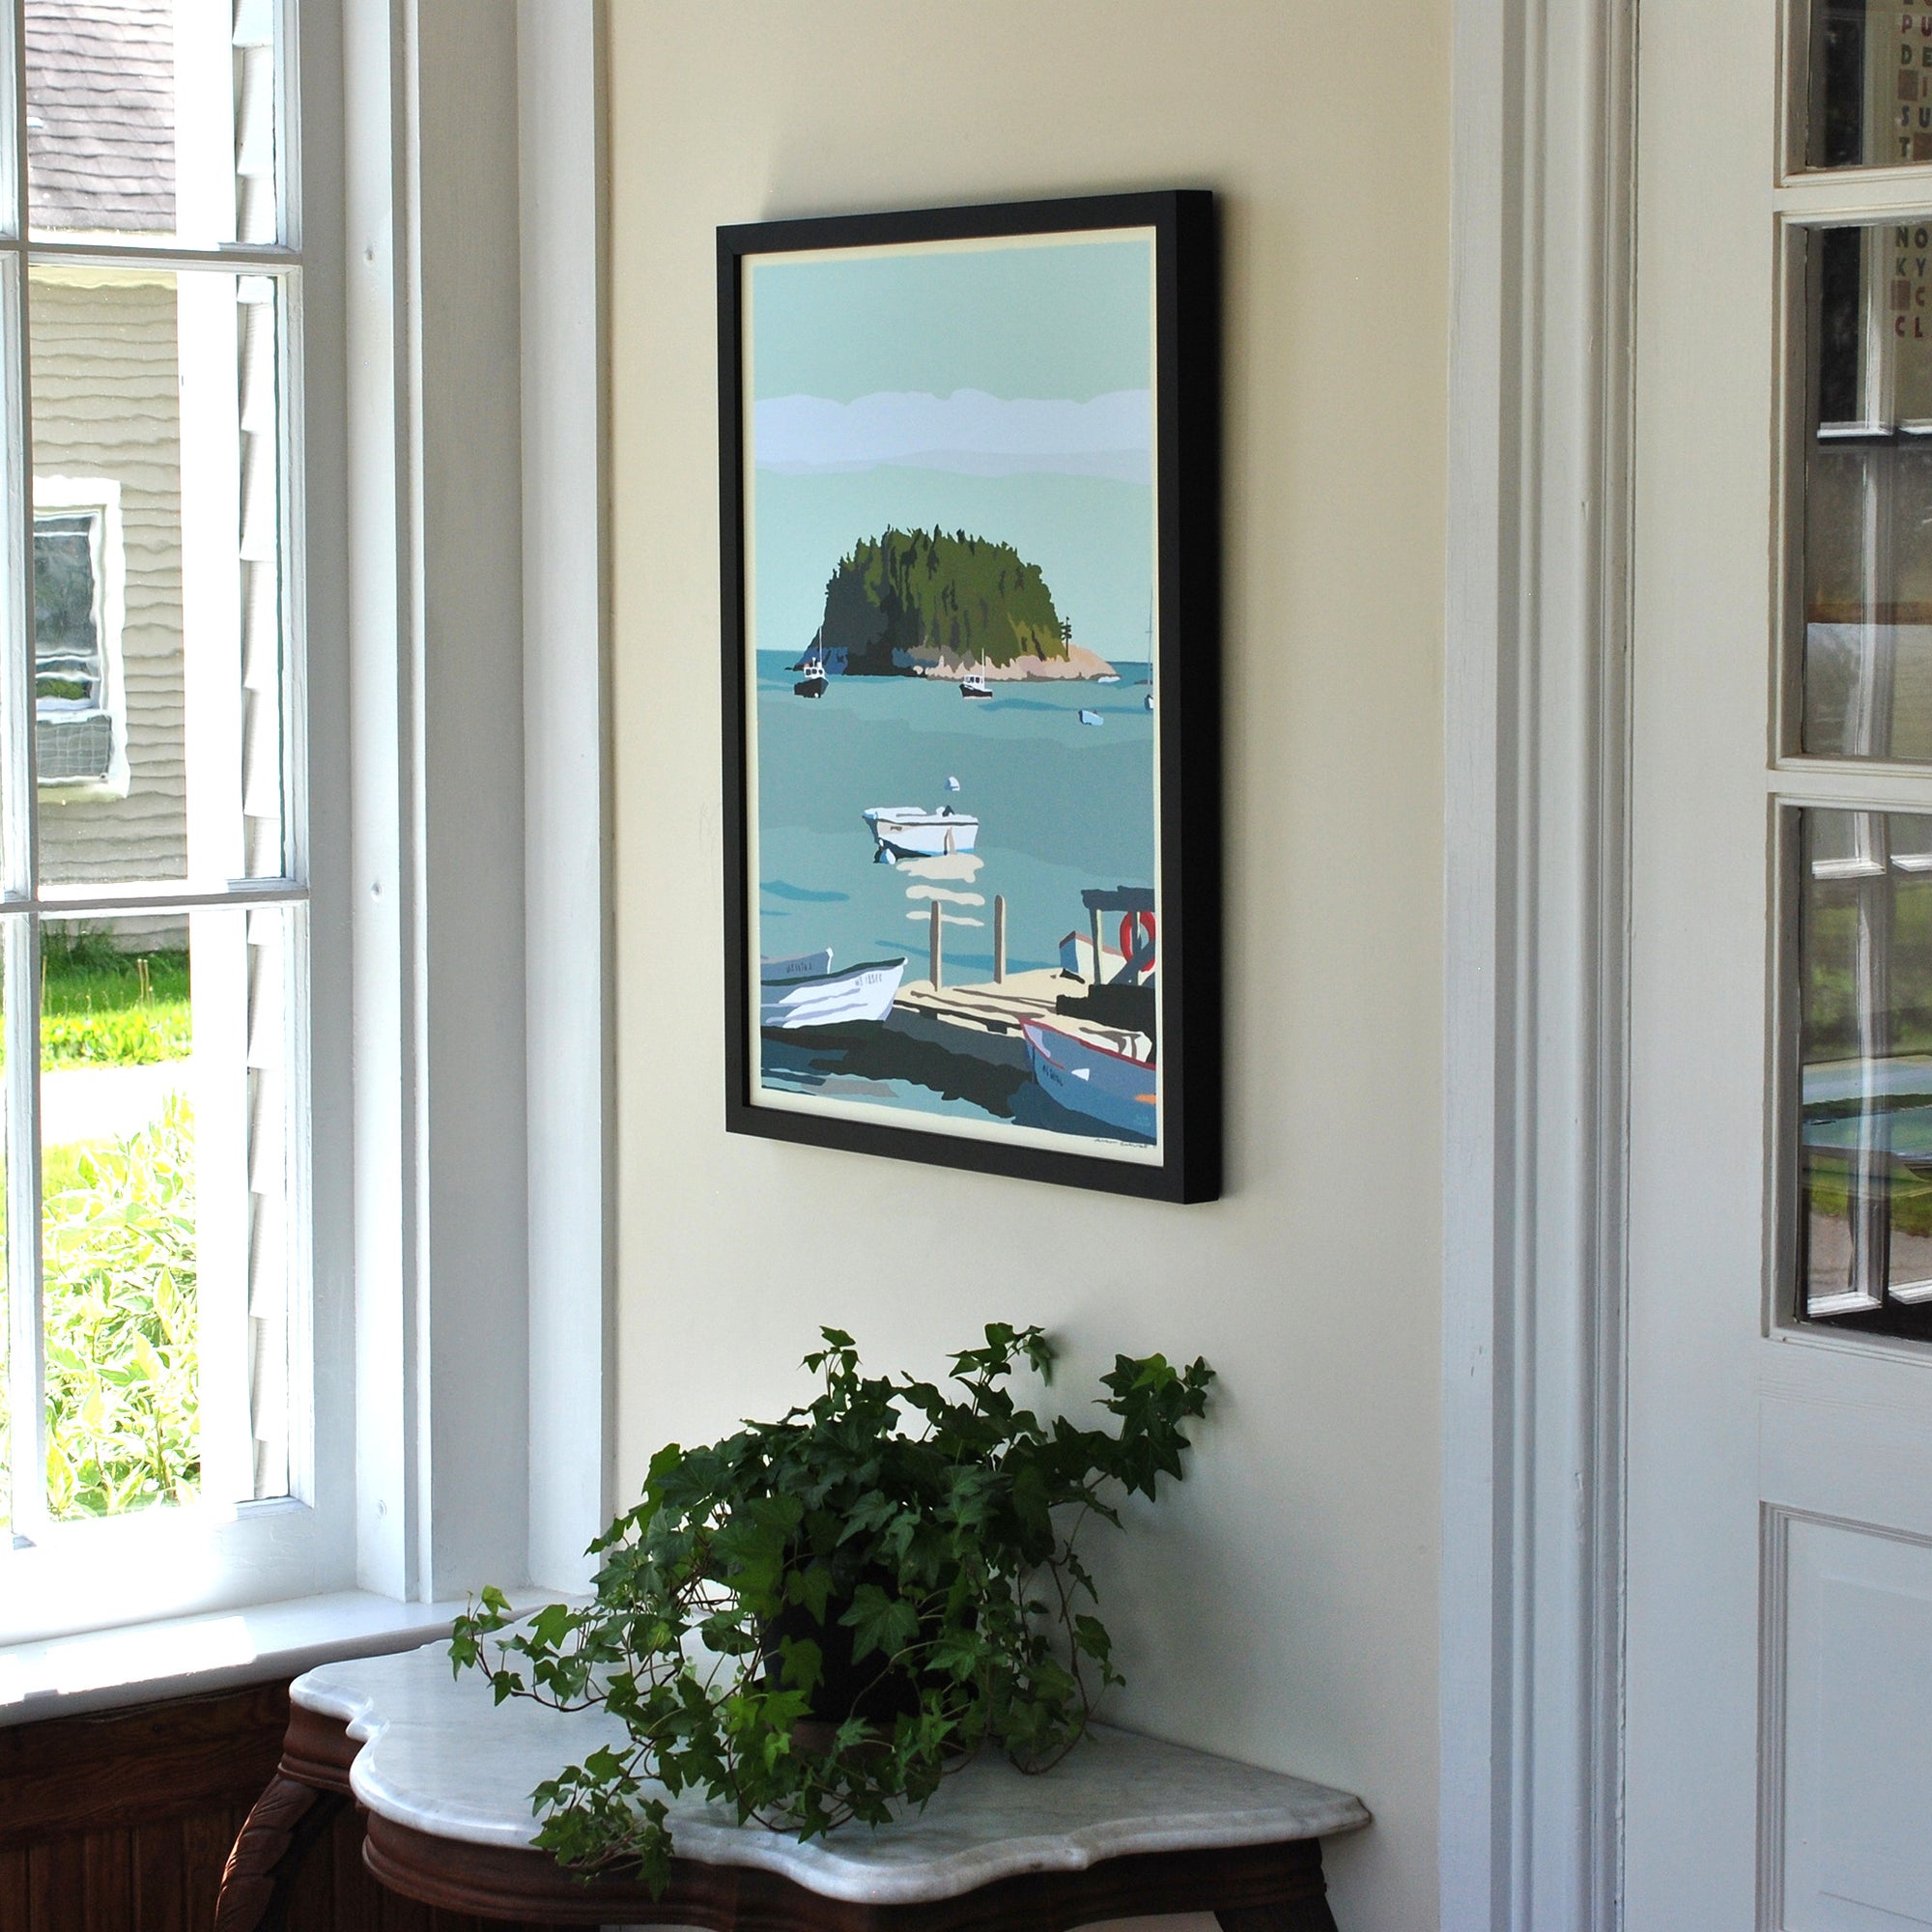 I Am An Island  Art Print 18" x 24" Vertical Framed Wall Poster By Alan Claude - Maine